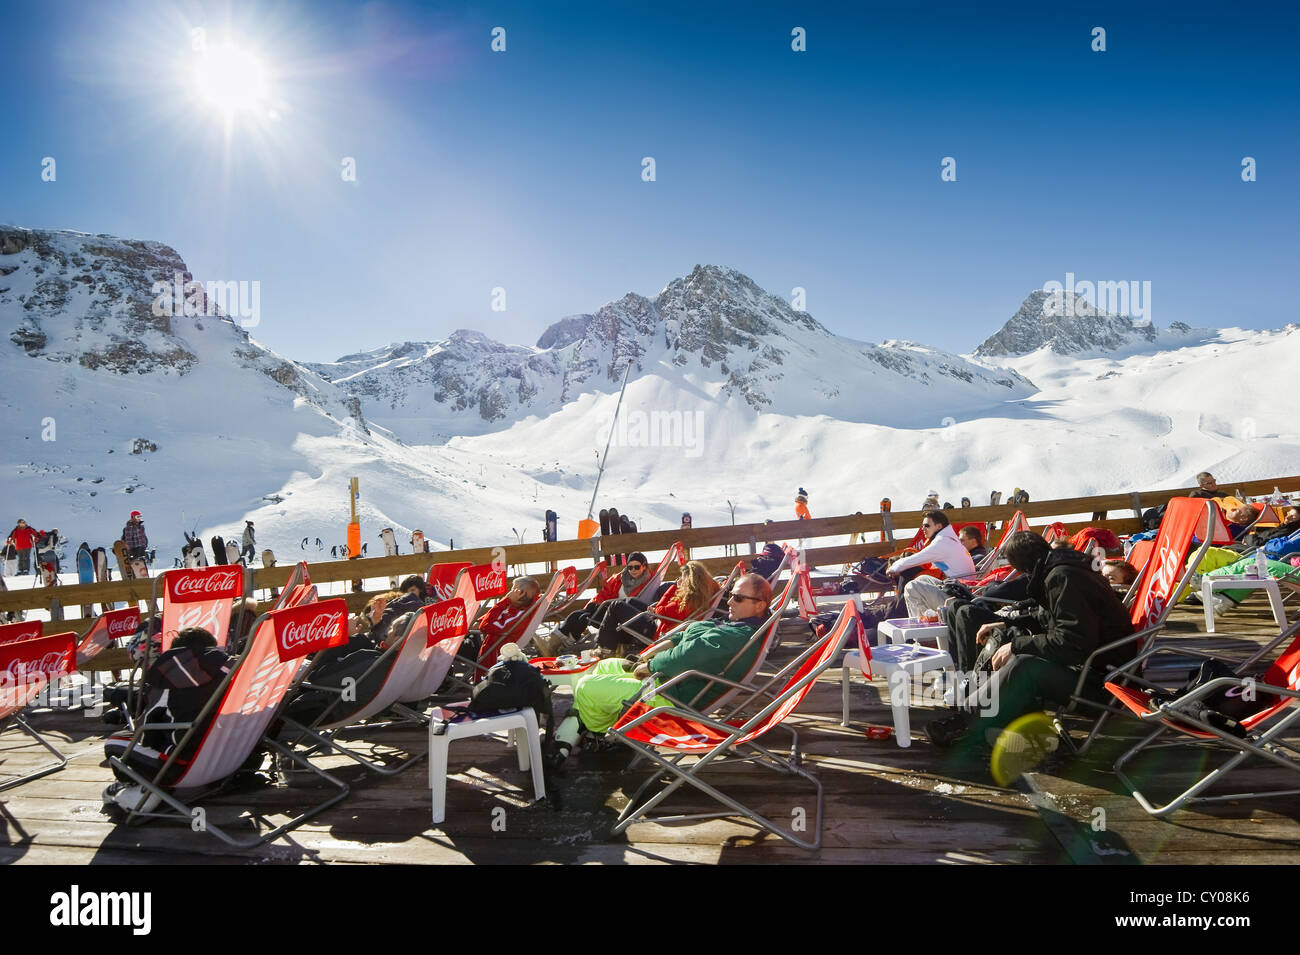 Gli sciatori in appoggio sotto il sole che si affaccia sulle montagne innevate, Tignes, Val d'Isere, Savoie, alpi, Francia, Europa Foto Stock